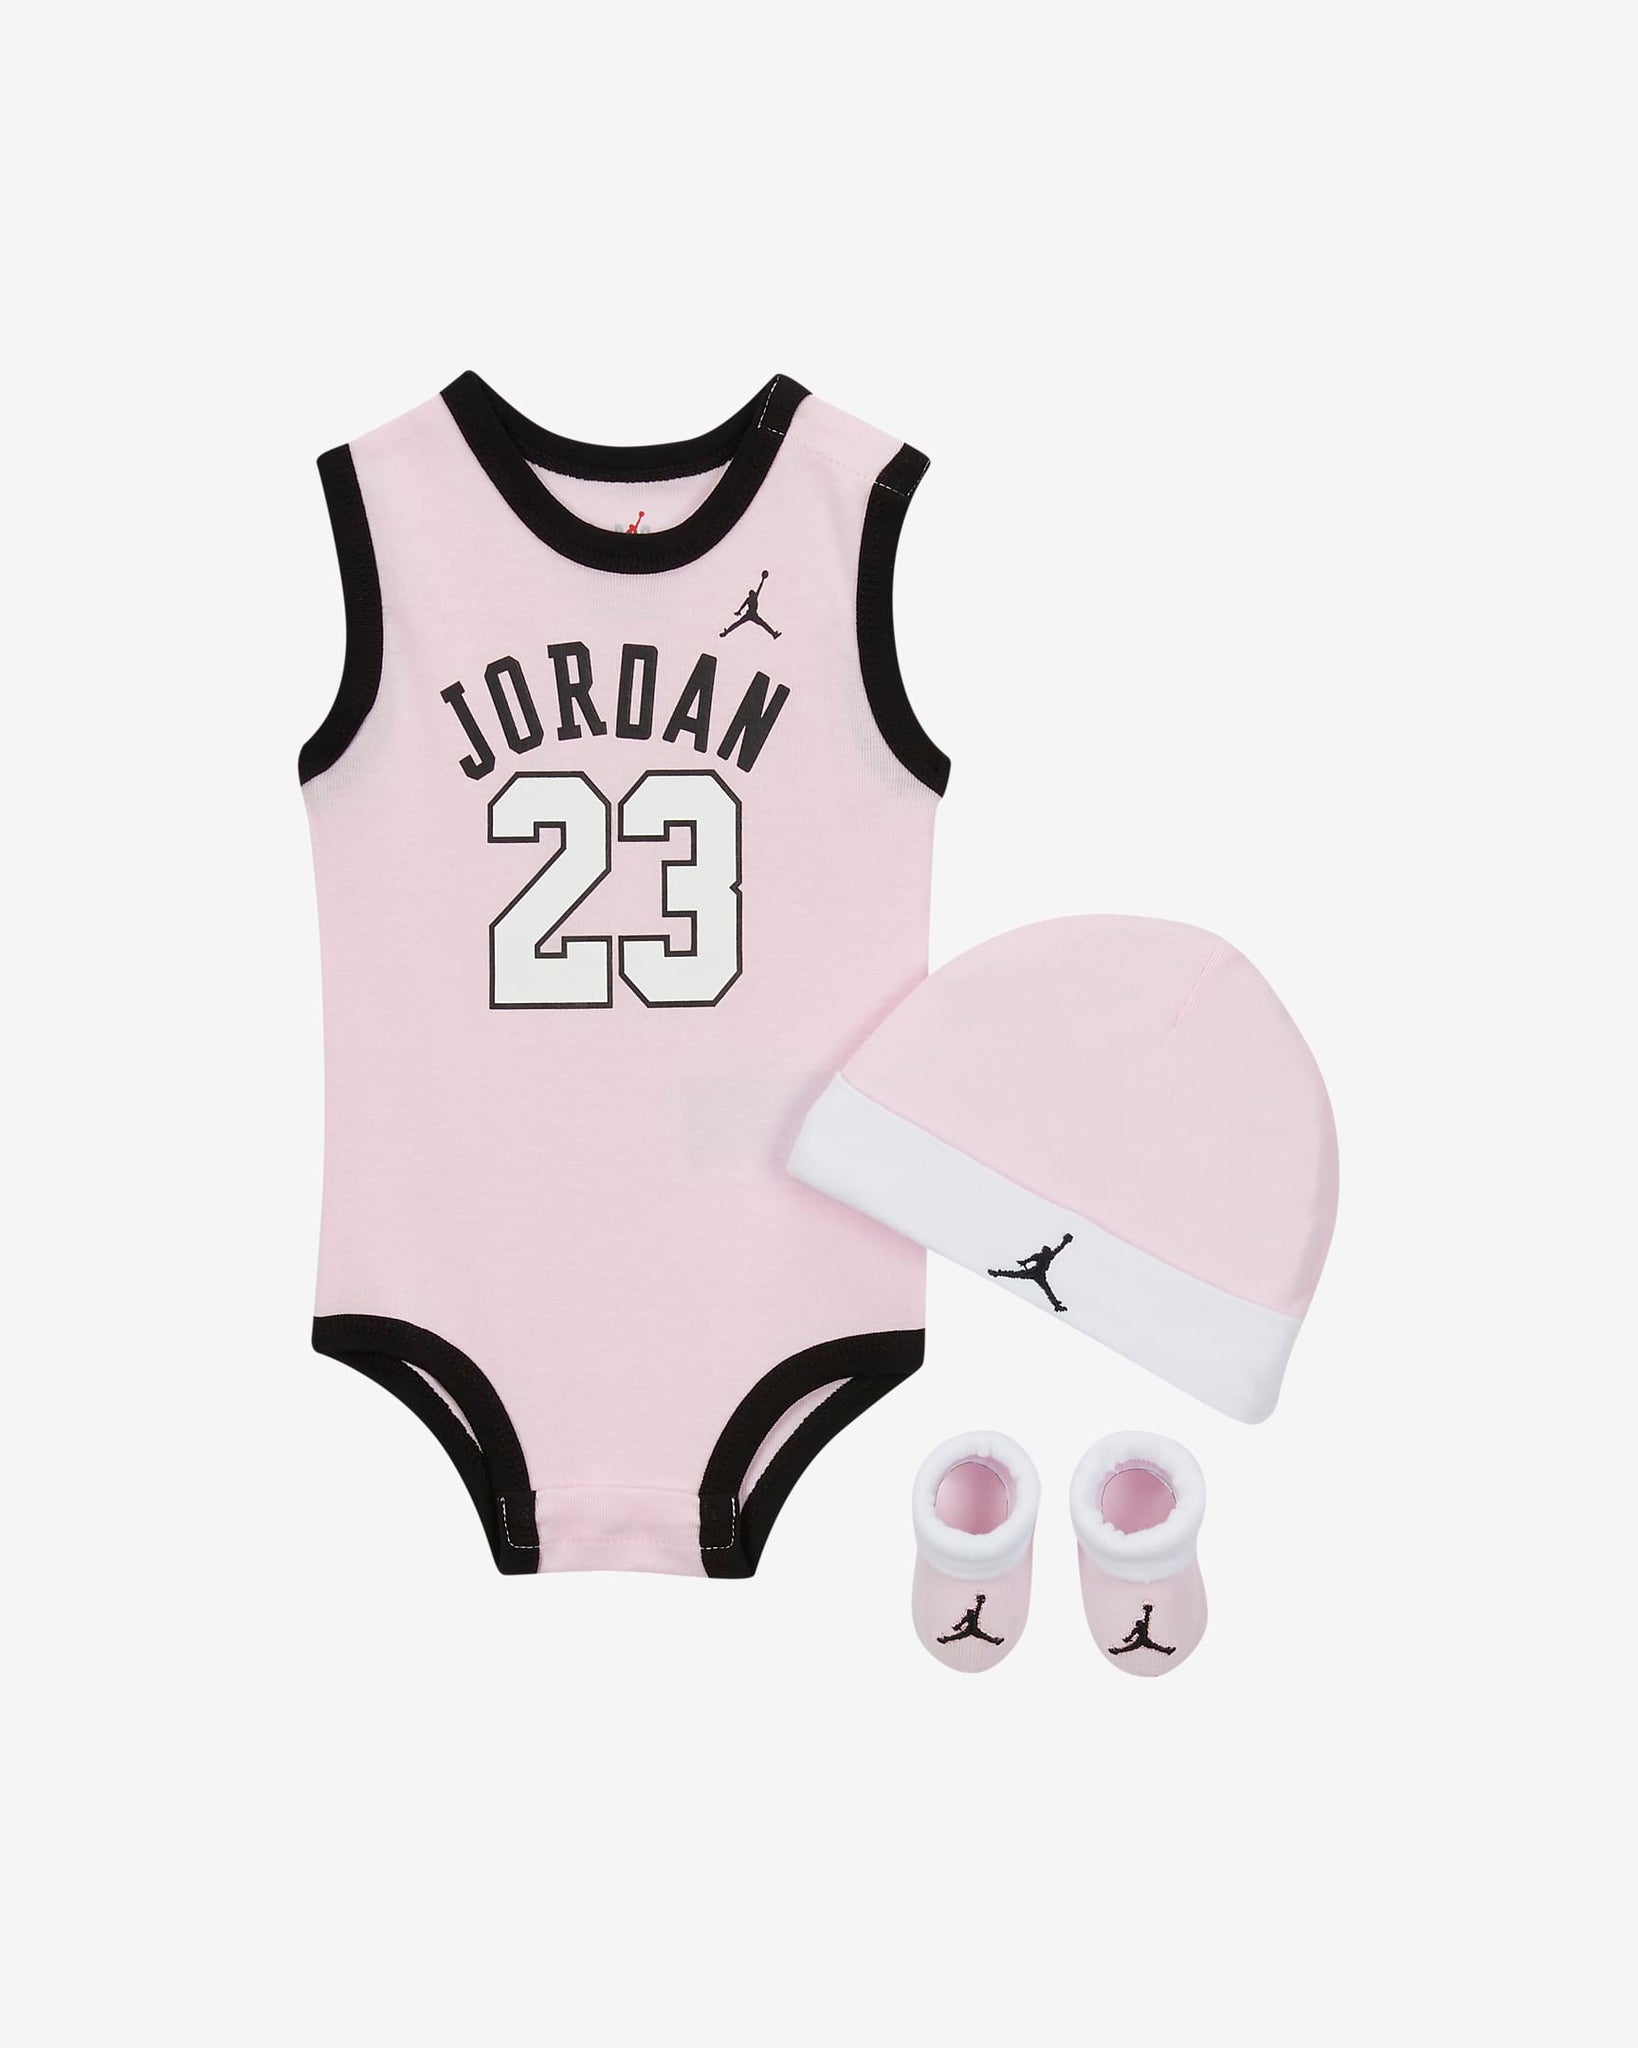 Jordan Baby Gift Box "23" Pink